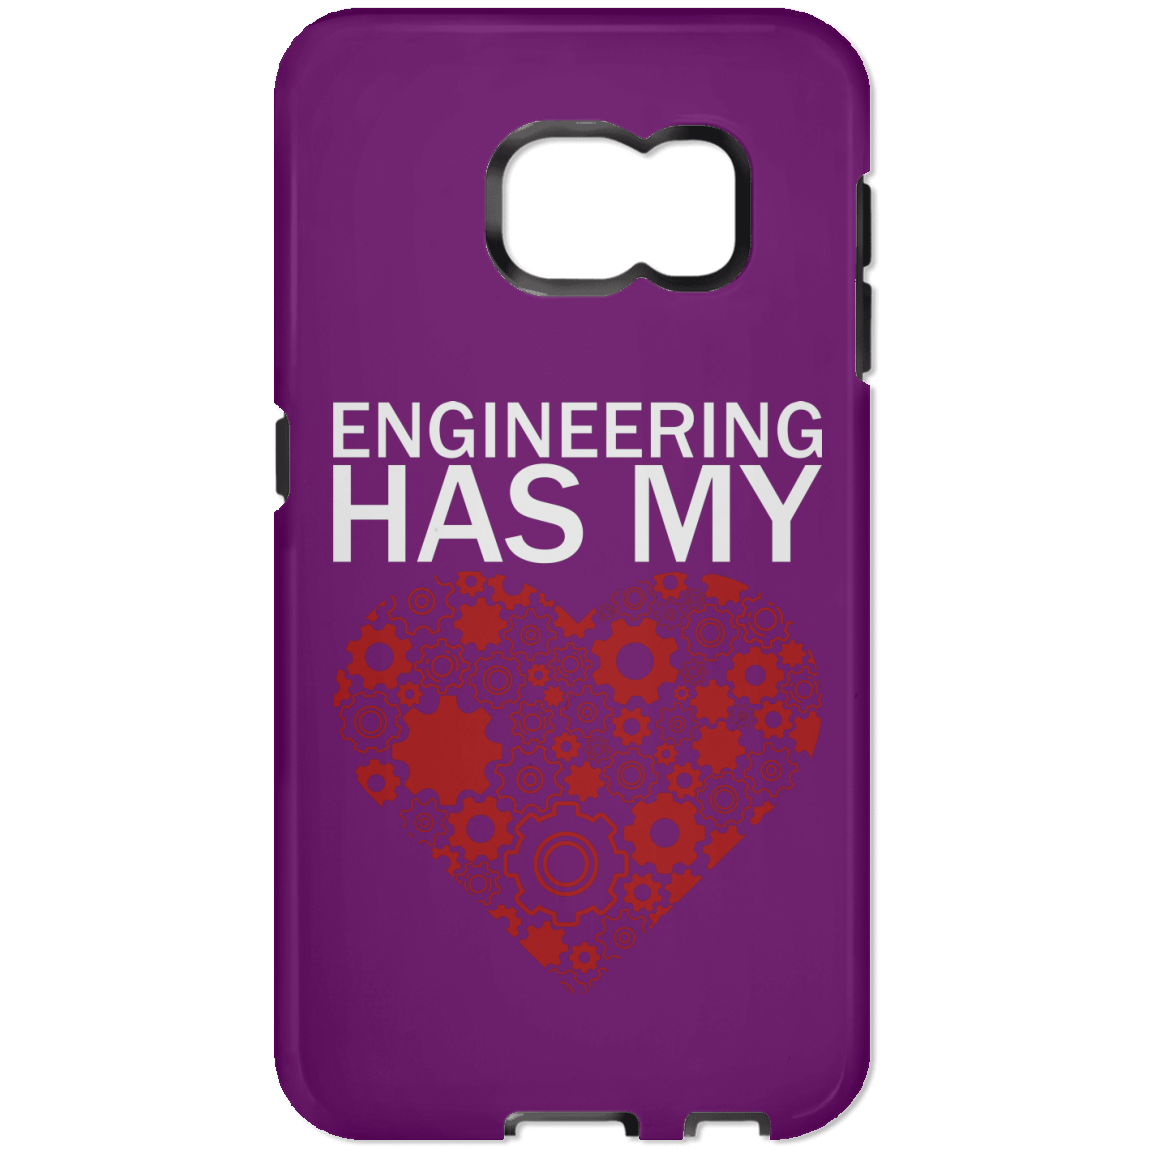 La ingeniería tiene mi corazón (funda para teléfono)